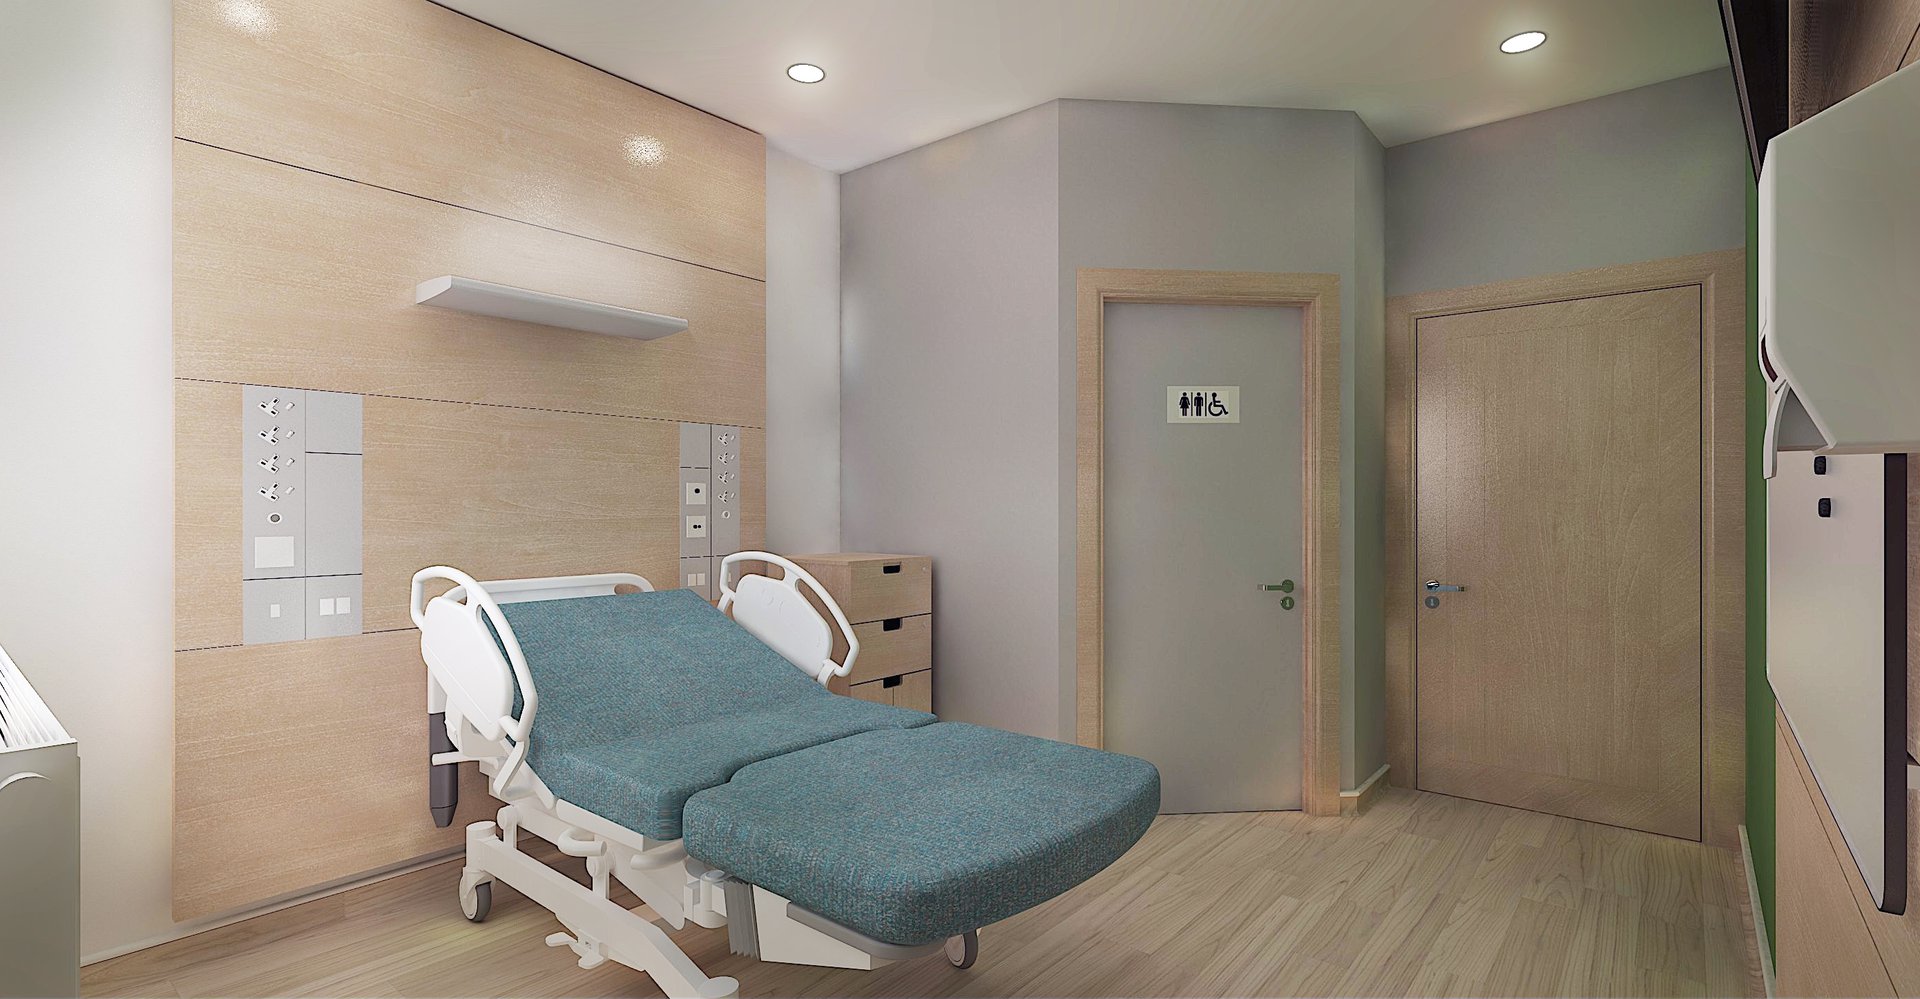 IPJ - Spire Healthcare Bedroom - V2 - Draft.jpg